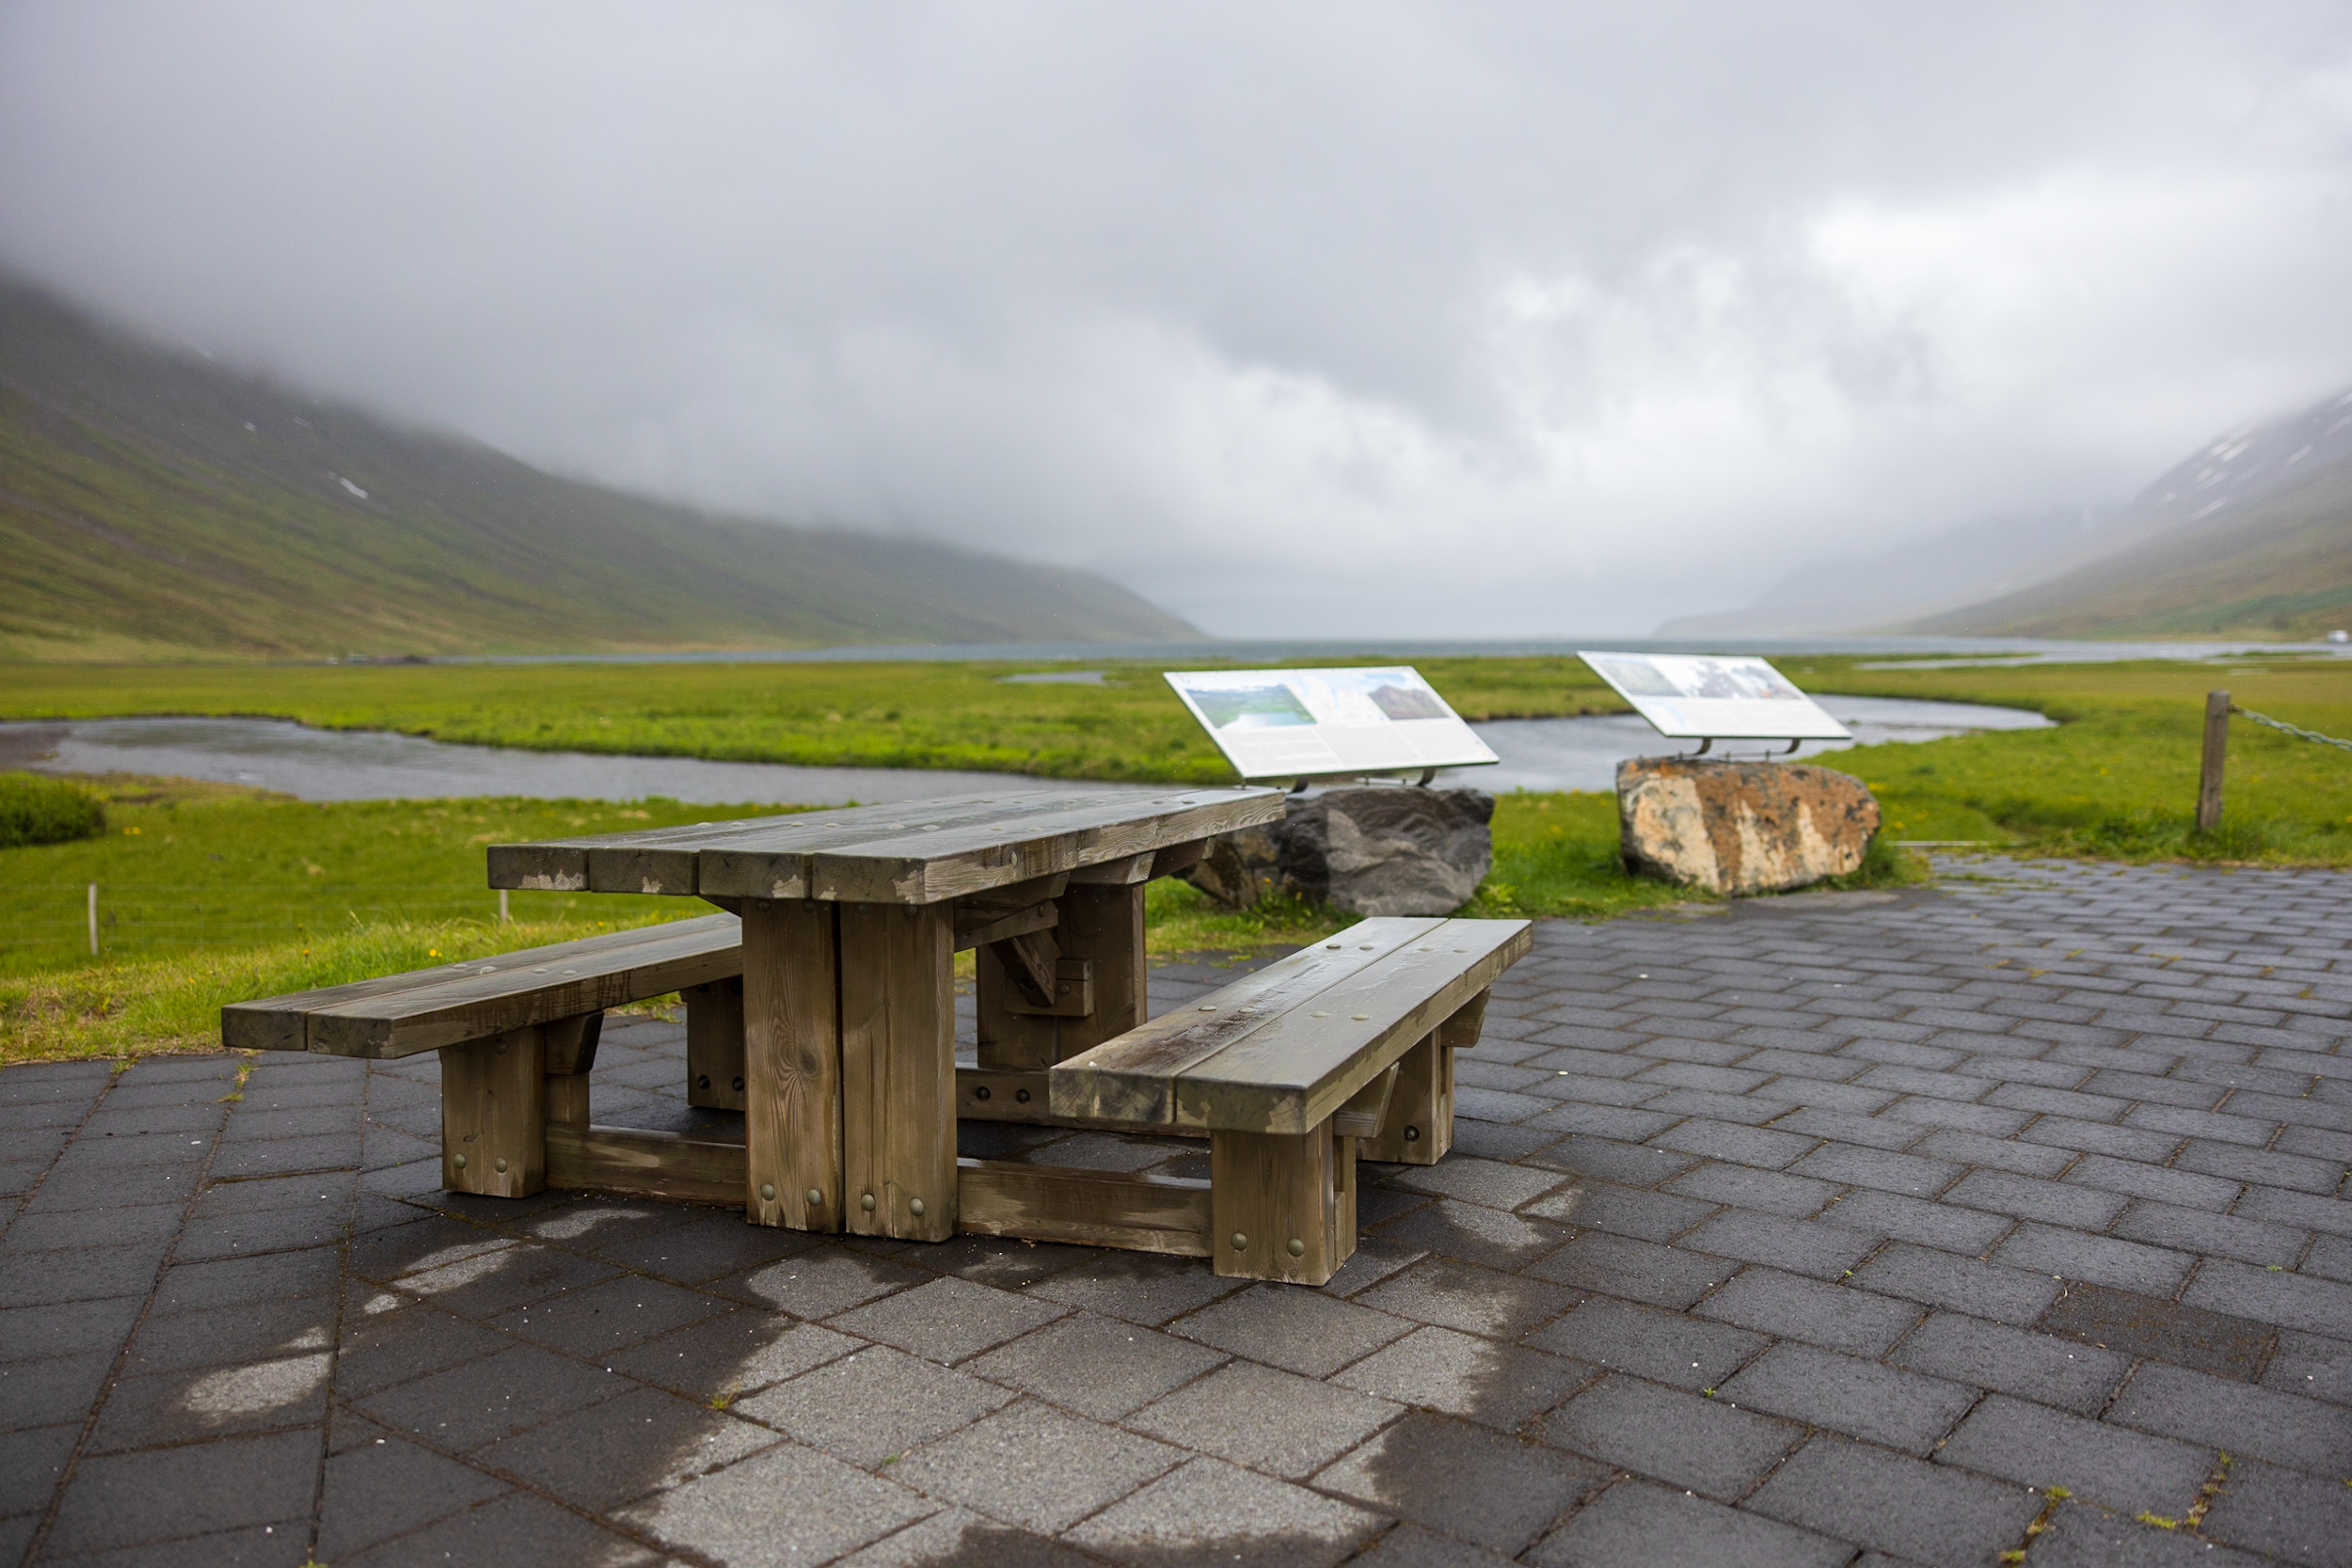 Héðinsfjörður Rest Area